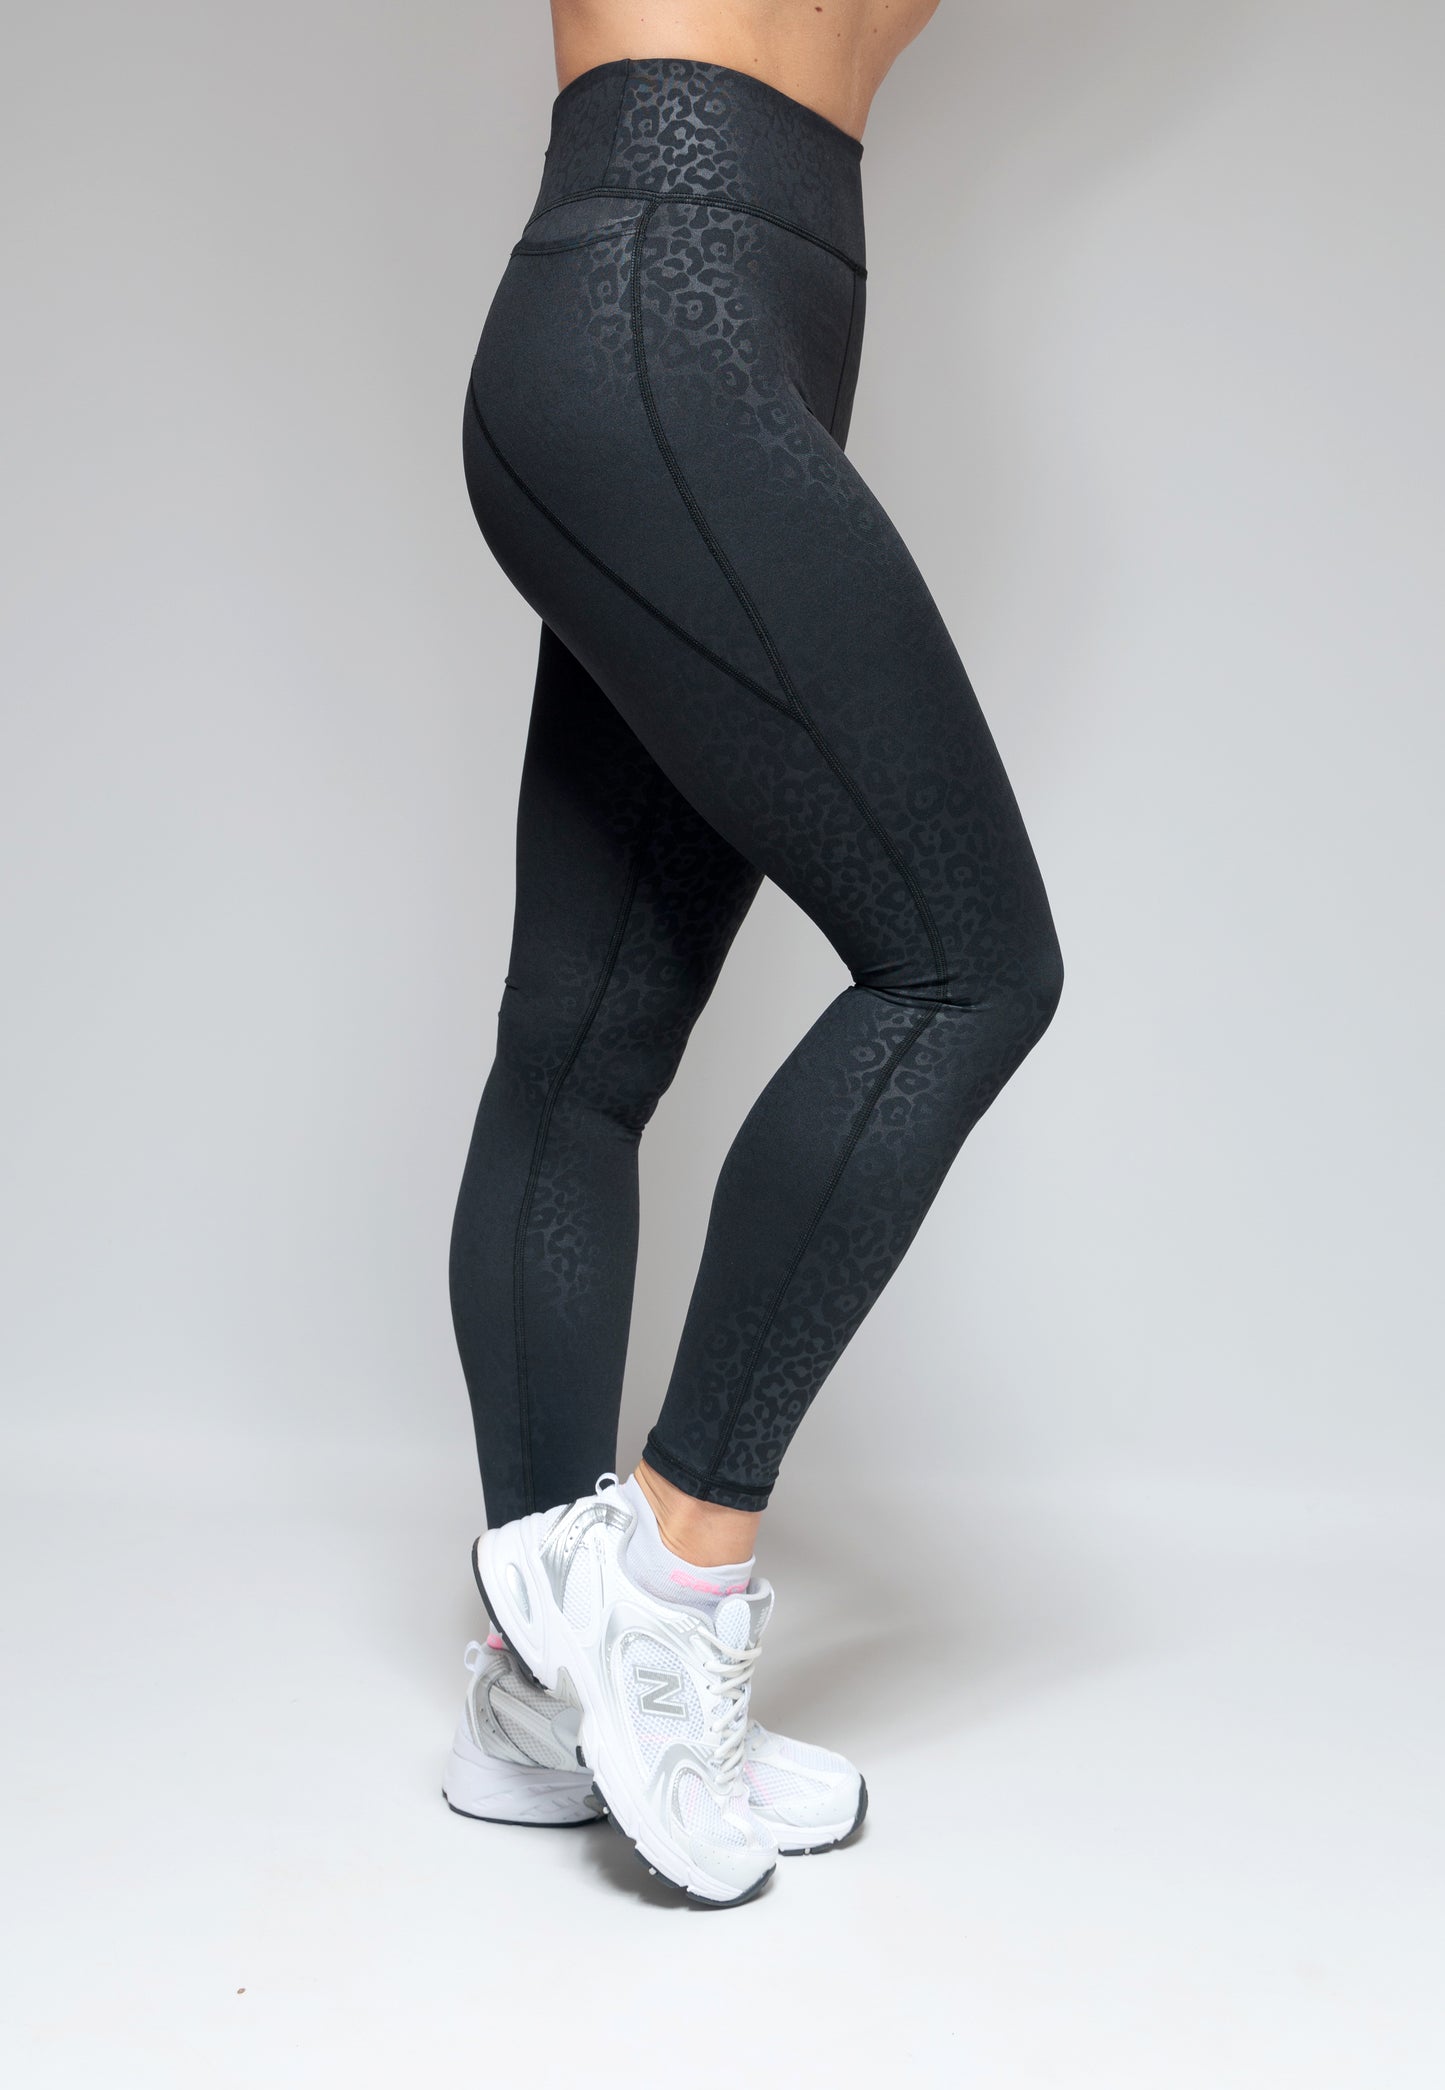 Nike Black Cat Athletic Leggings for Women